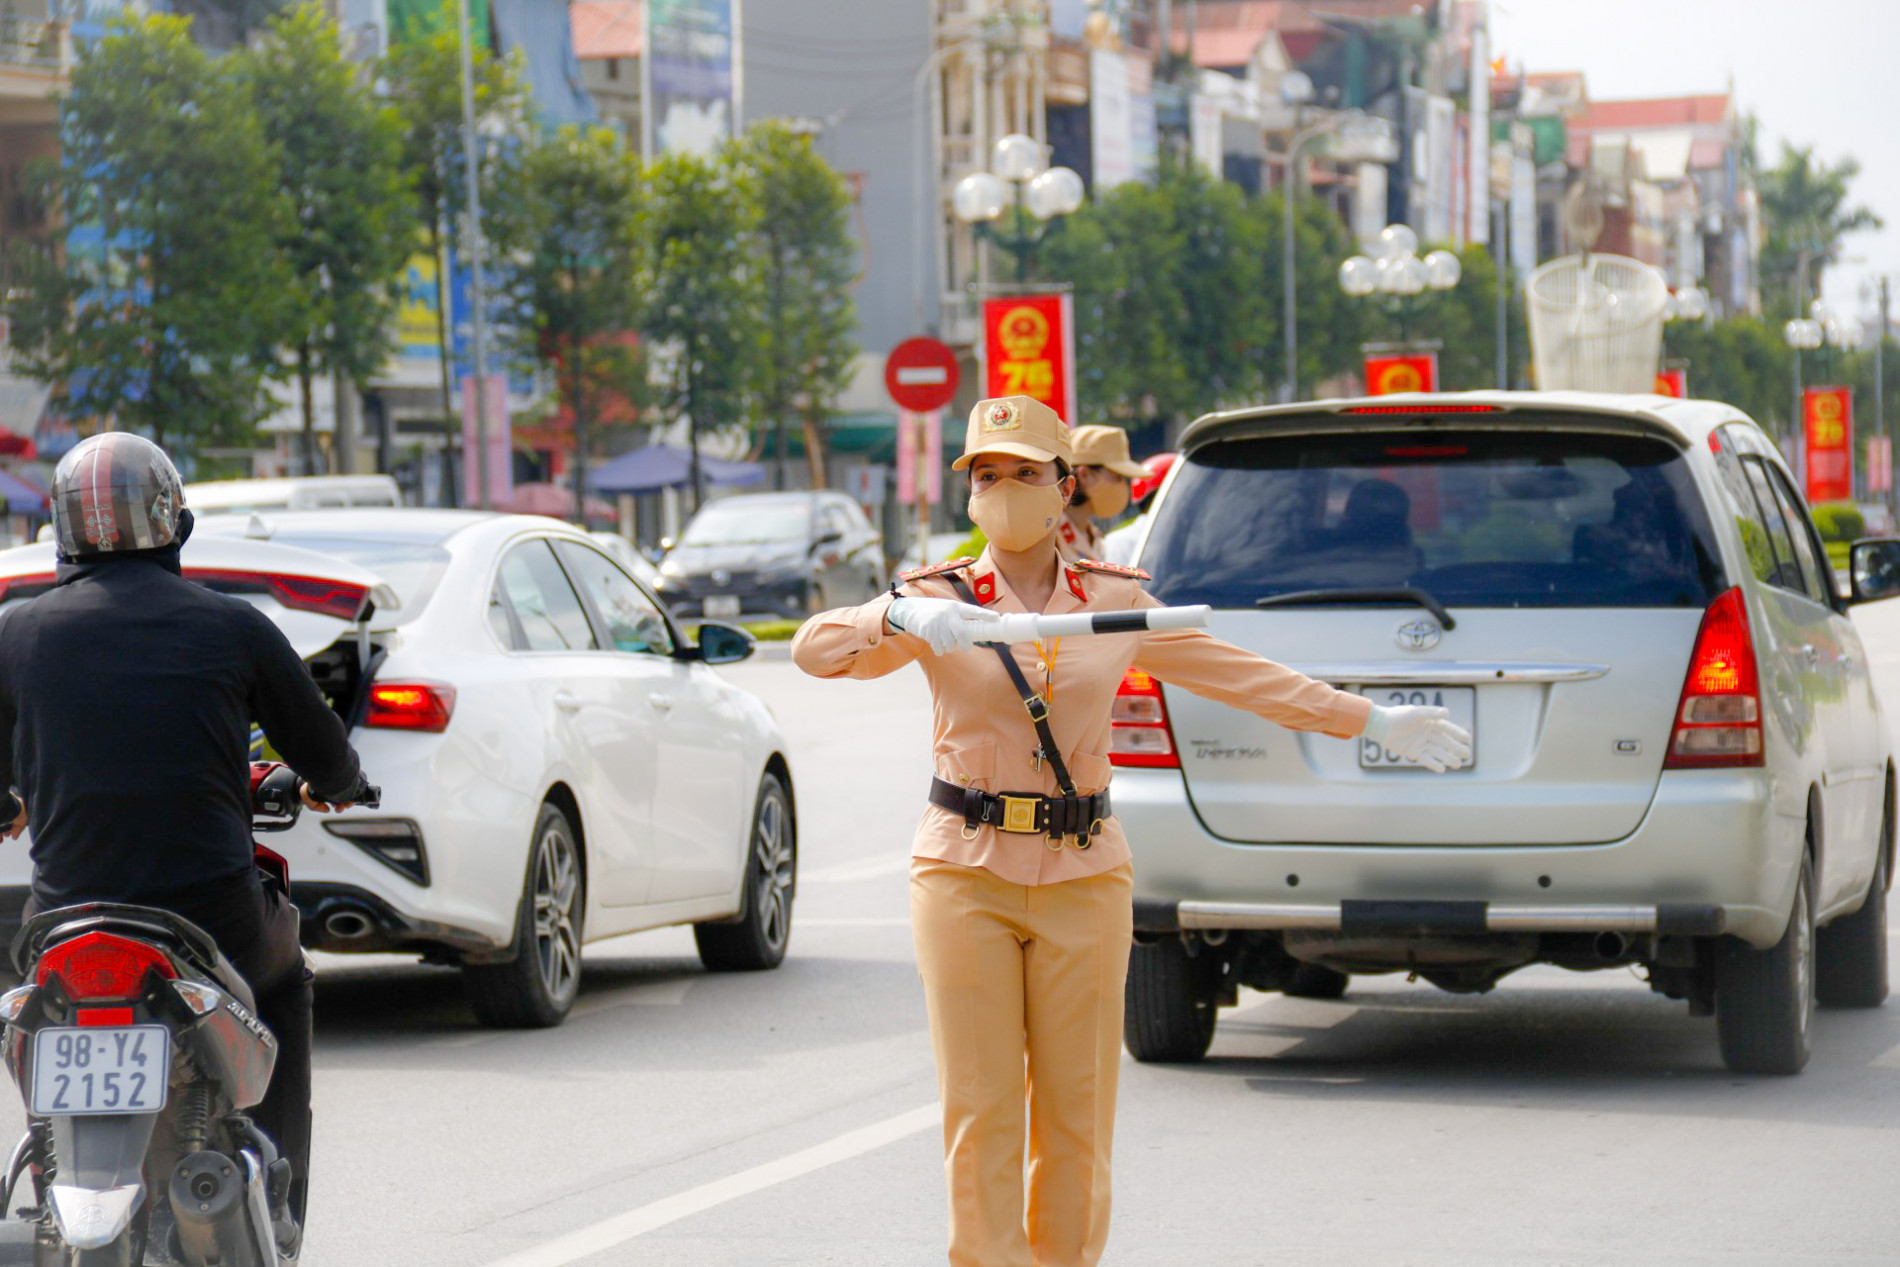 Tìm hiểu về đội CSGT nữ Bắc Giang để thấy được vẻ đẹp của phái đẹp trong lực lượng Cảnh sát giao thông. Họ là những người phụ nữ mạnh mẽ, đầy năng lượng và nhiệt huyết, đảm bảo an toàn trên đường phố. Hãy cùng xem hình ảnh để hiểu rõ hơn về họ!